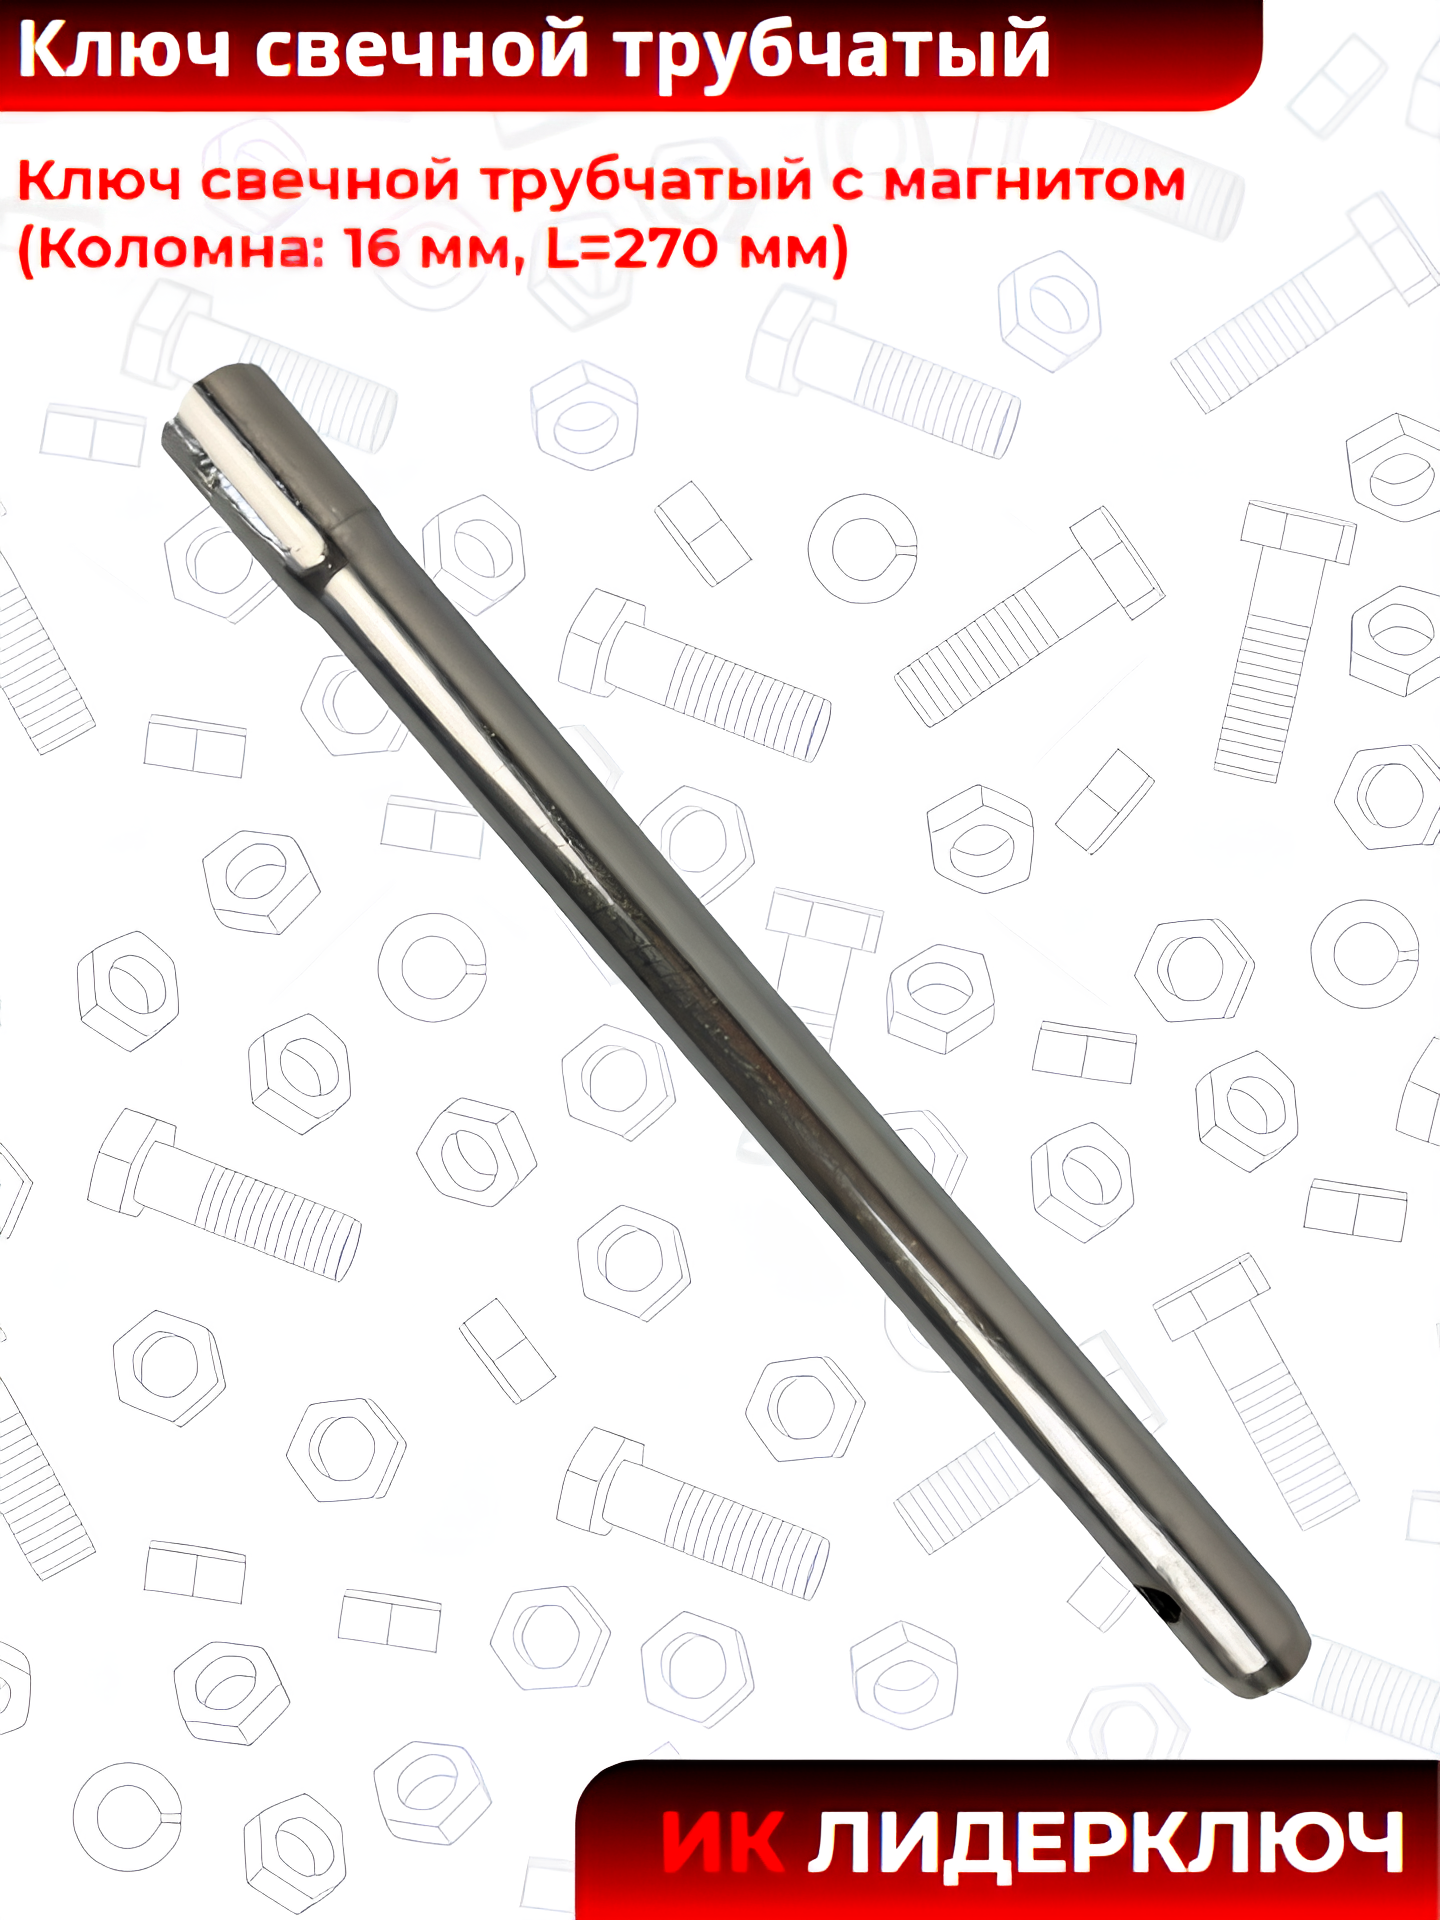 Ключ свечной трубчатый с магнитом (Коломна: 16 мм, L=270 мм)